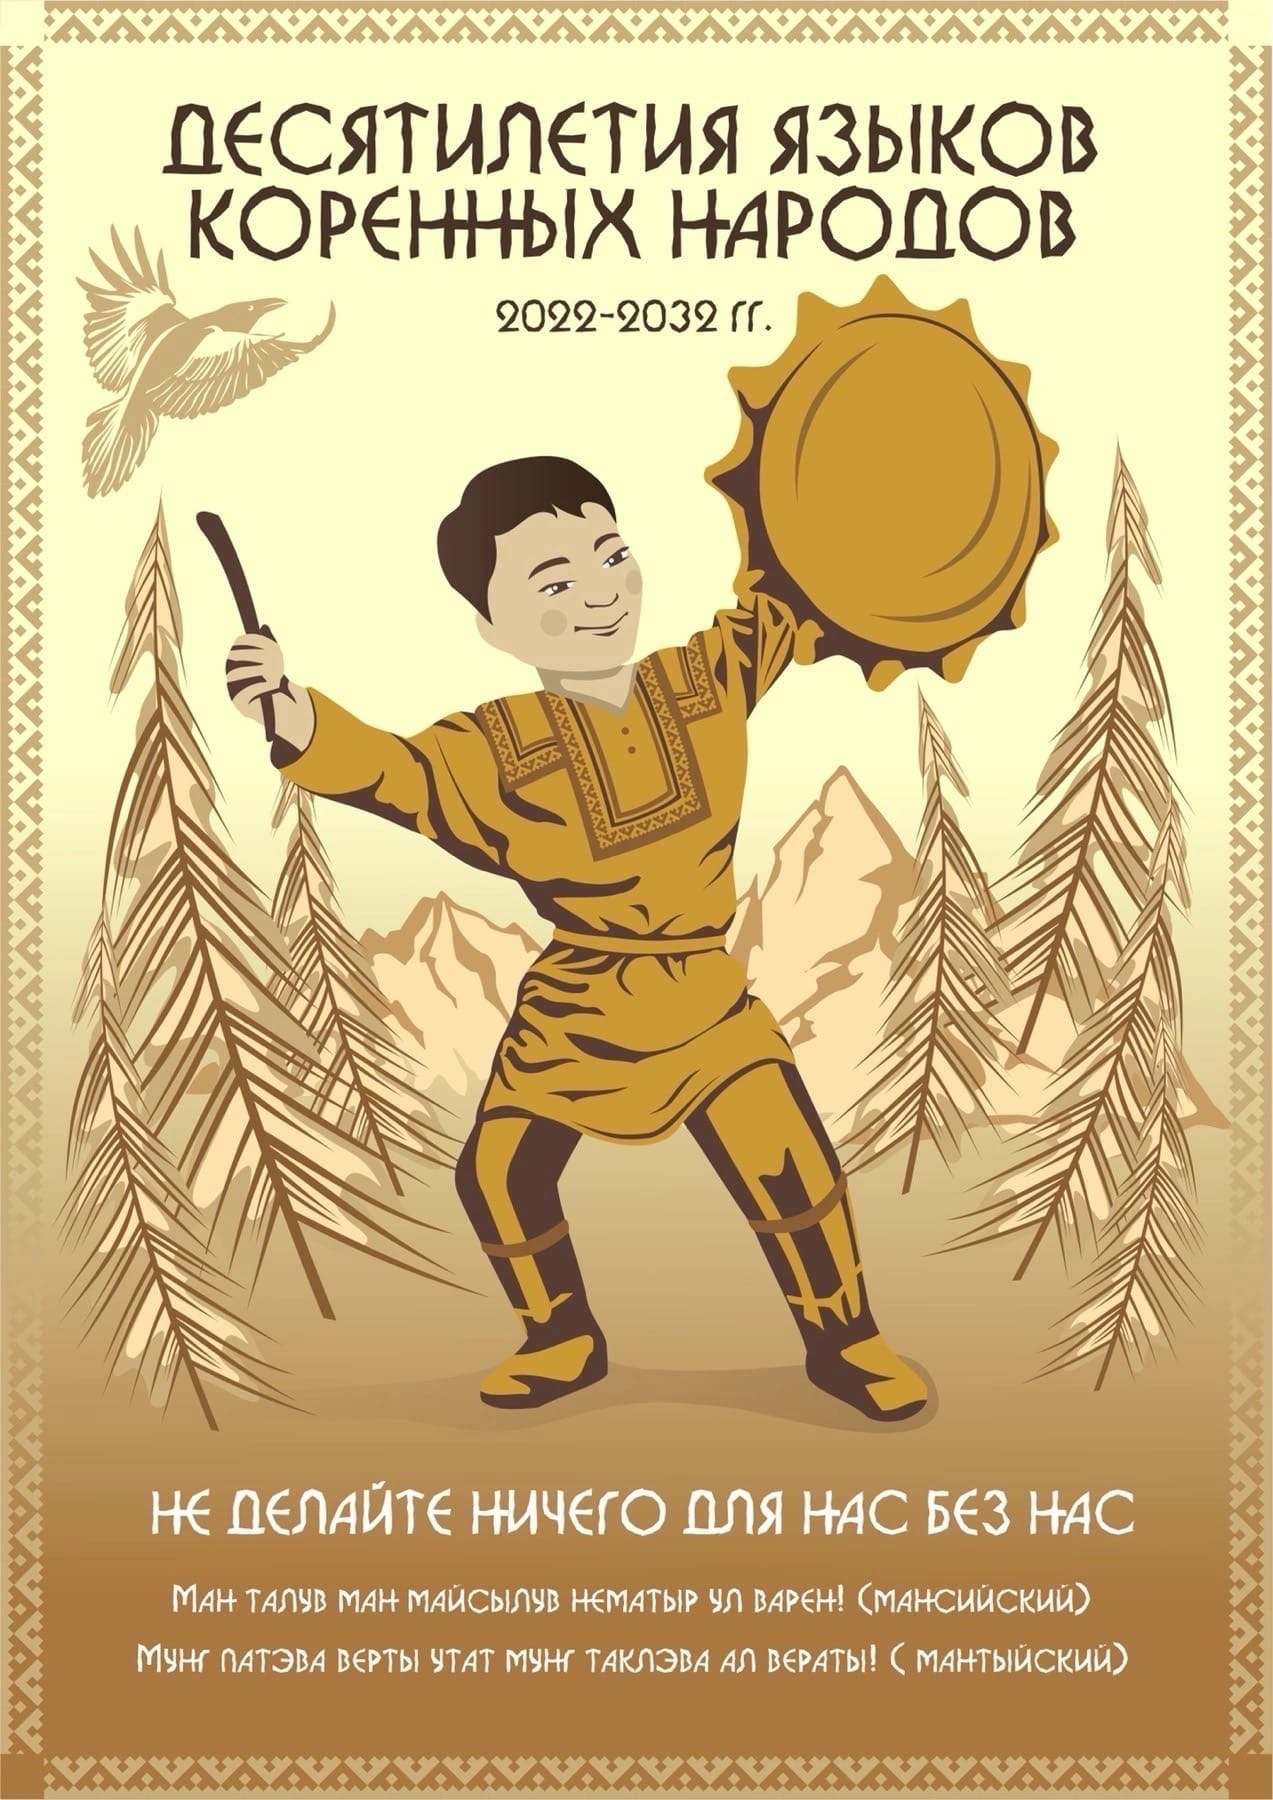 Плакат "Десятилетие языков коренных народов (2022-2032 гг)". Цитата: Не делайте ничего для нас без нас"